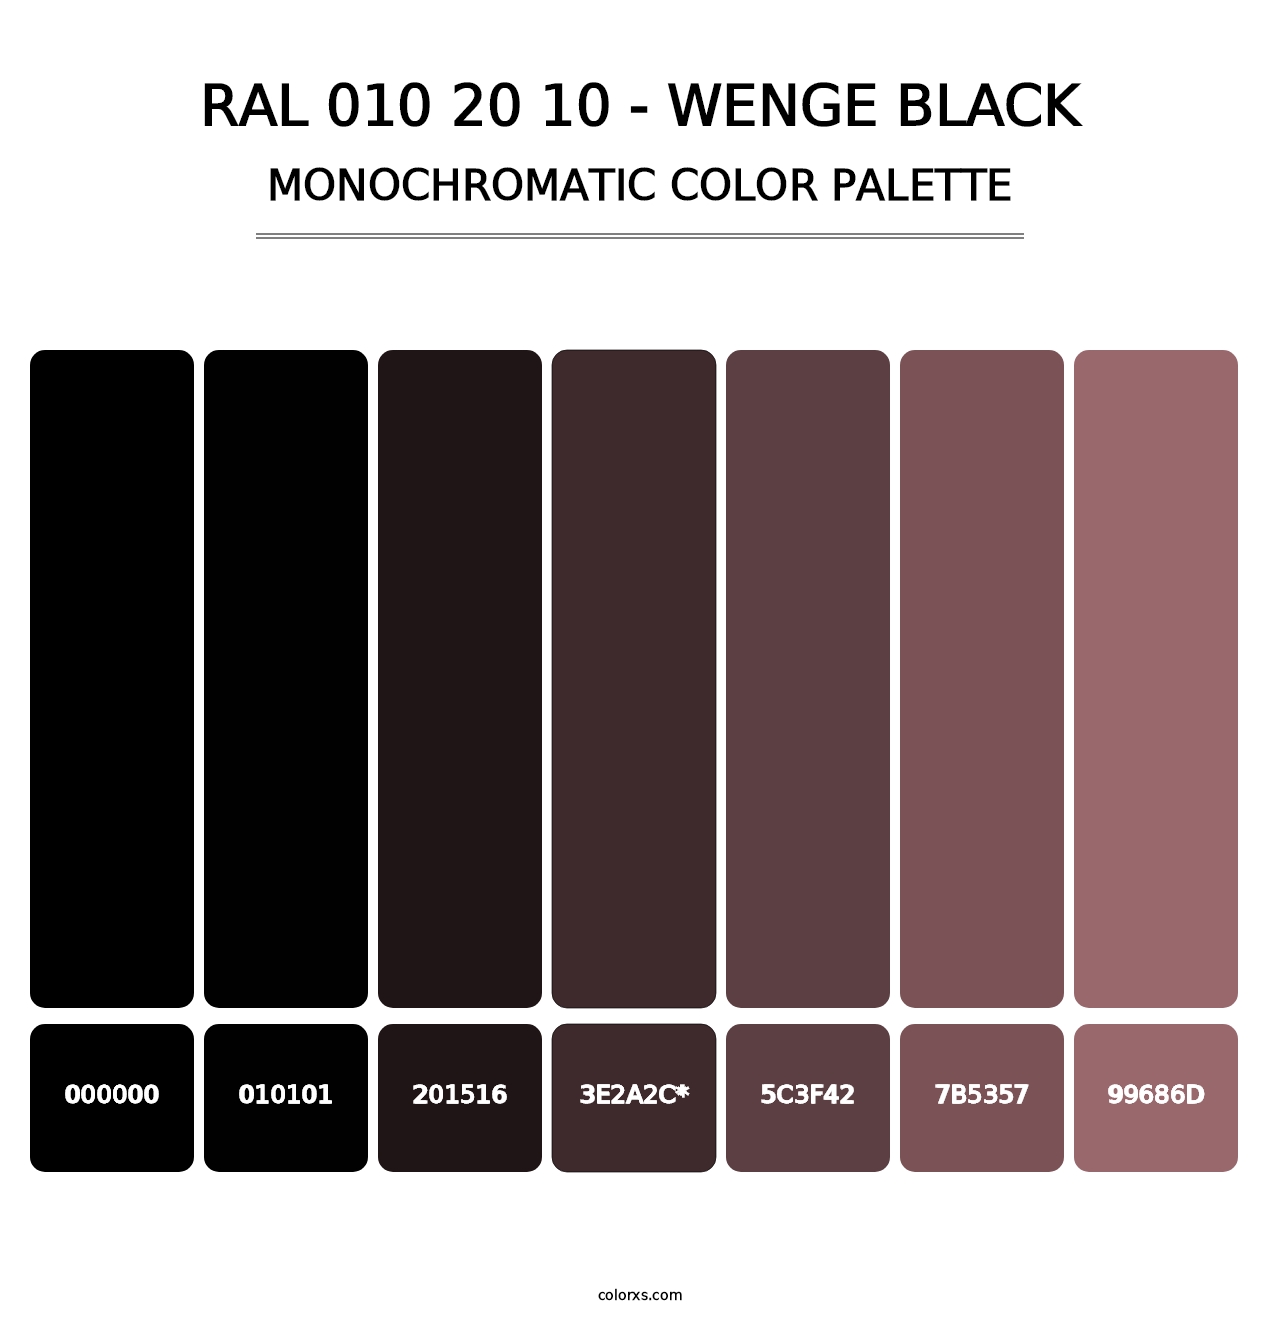 RAL 010 20 10 - Wenge Black - Monochromatic Color Palette